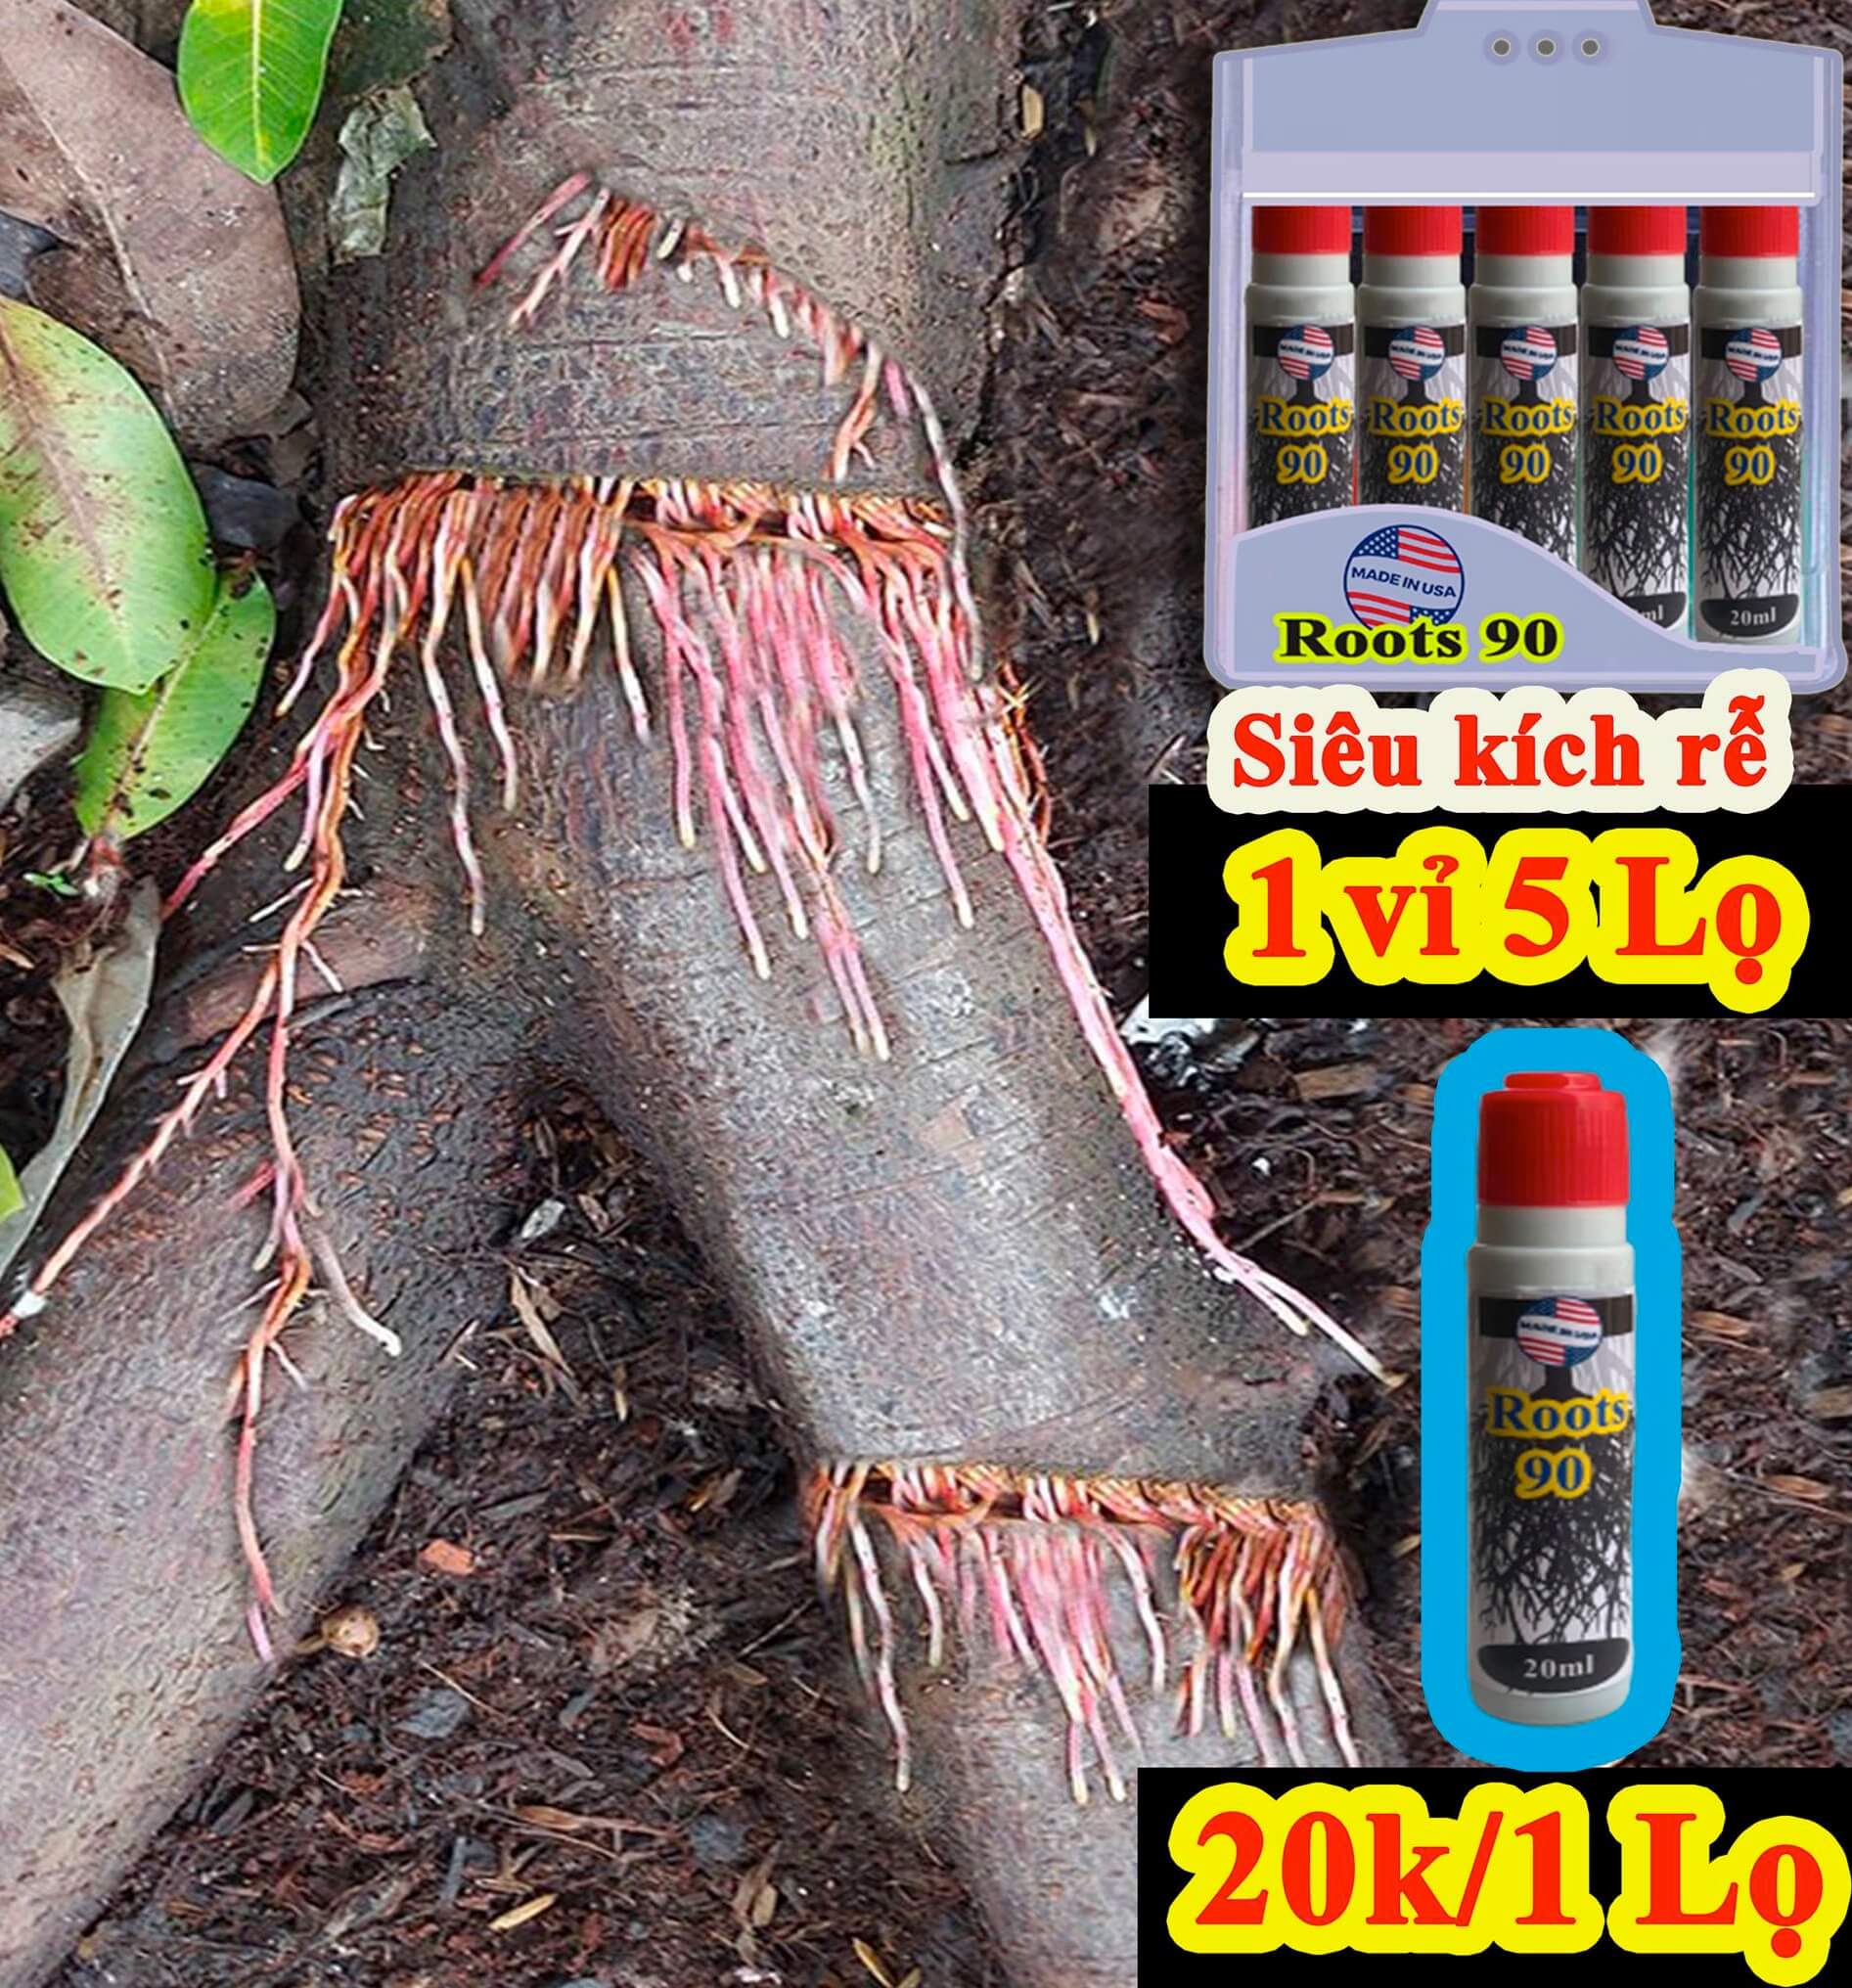 Roots 90 cách sử dụng thuốc kích rễ Roots 90 có tốt không hình 7